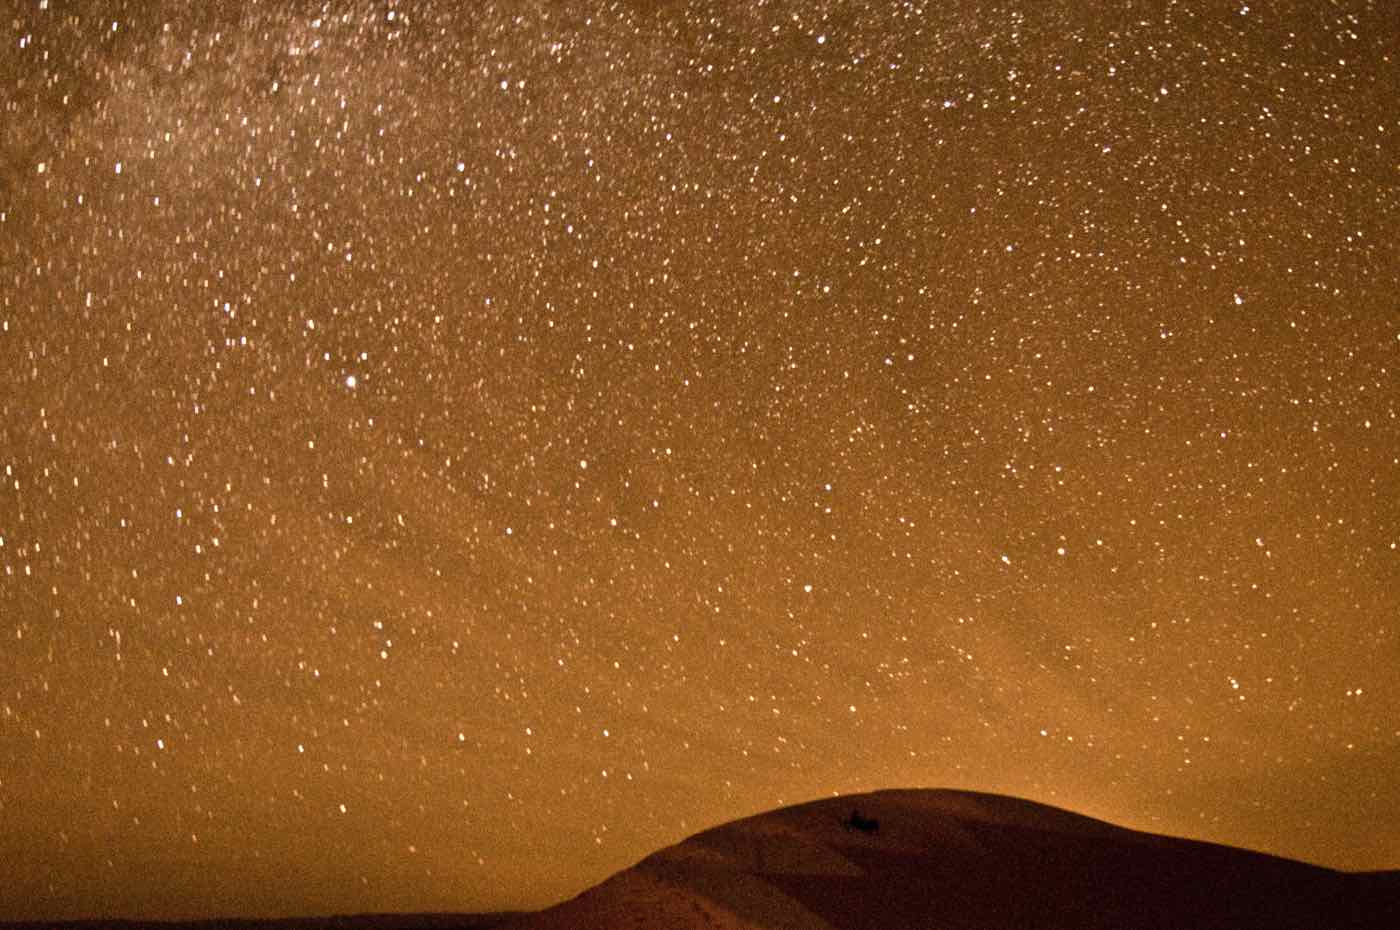 Stargazing in the Sahara Desert